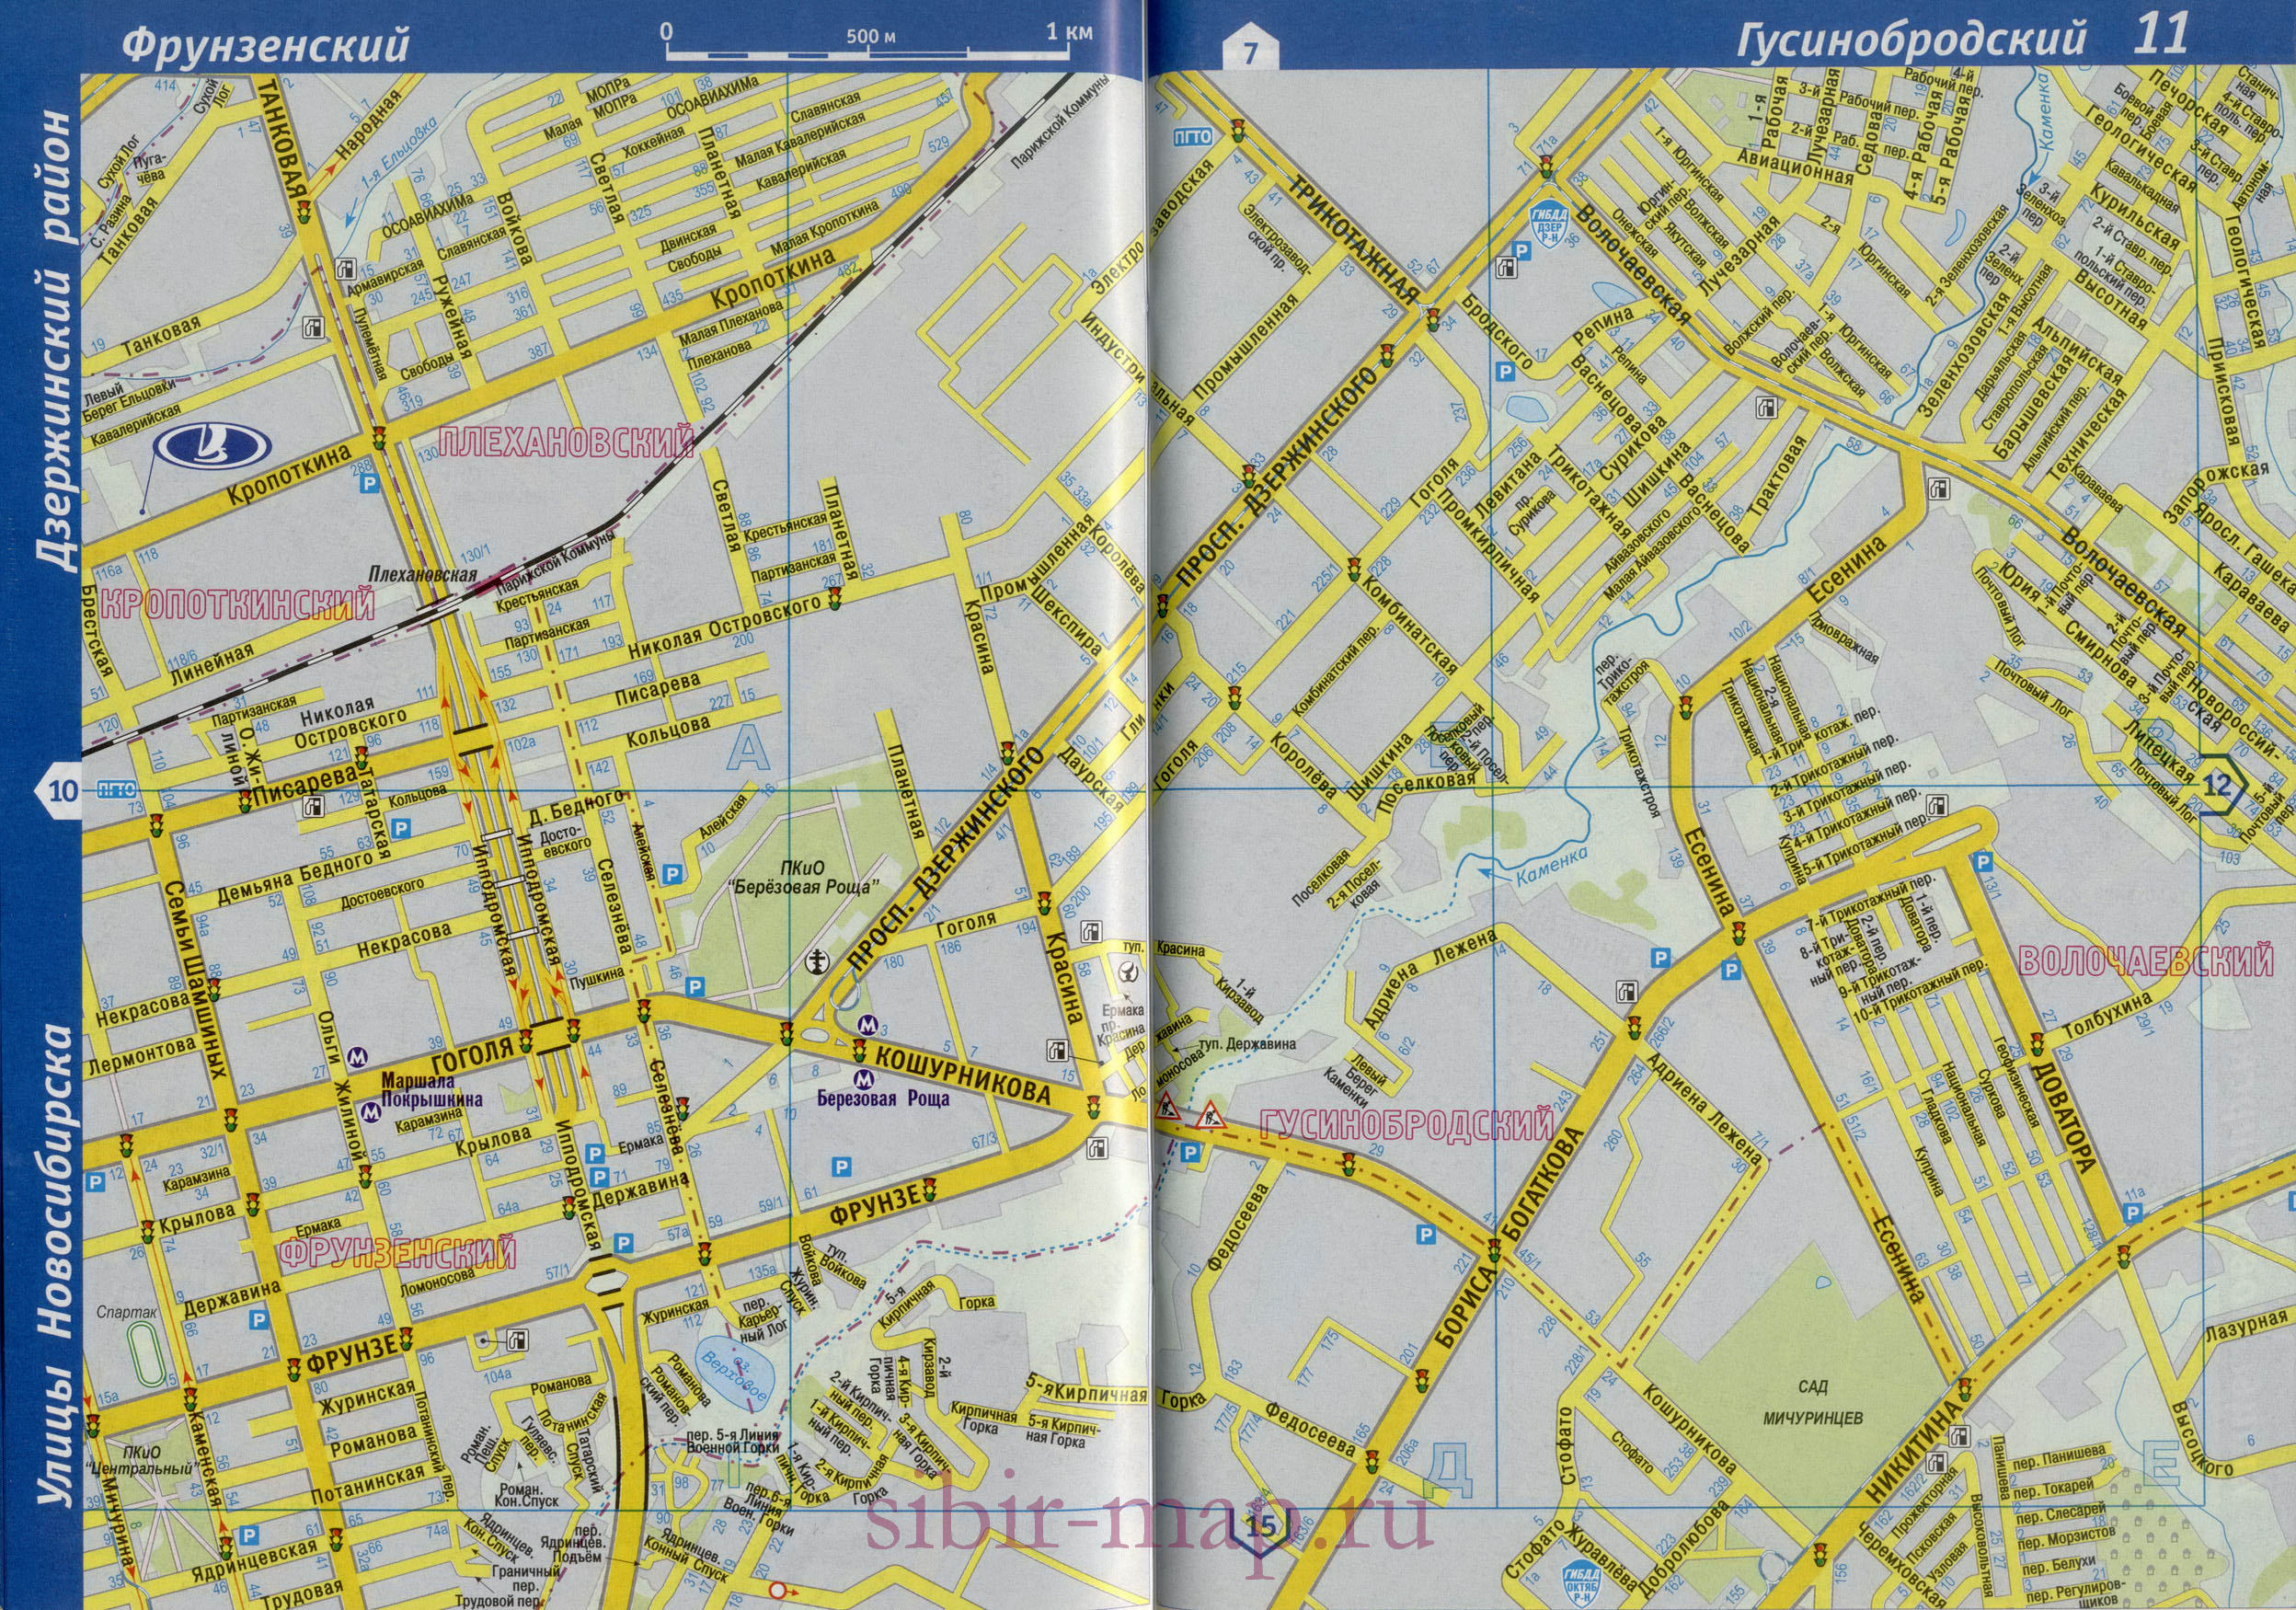 Карта Центрального района города Новосибирска. Крупномасштабная карта - Центральный р-н с названиями улиц и номерами домов, B0 - 